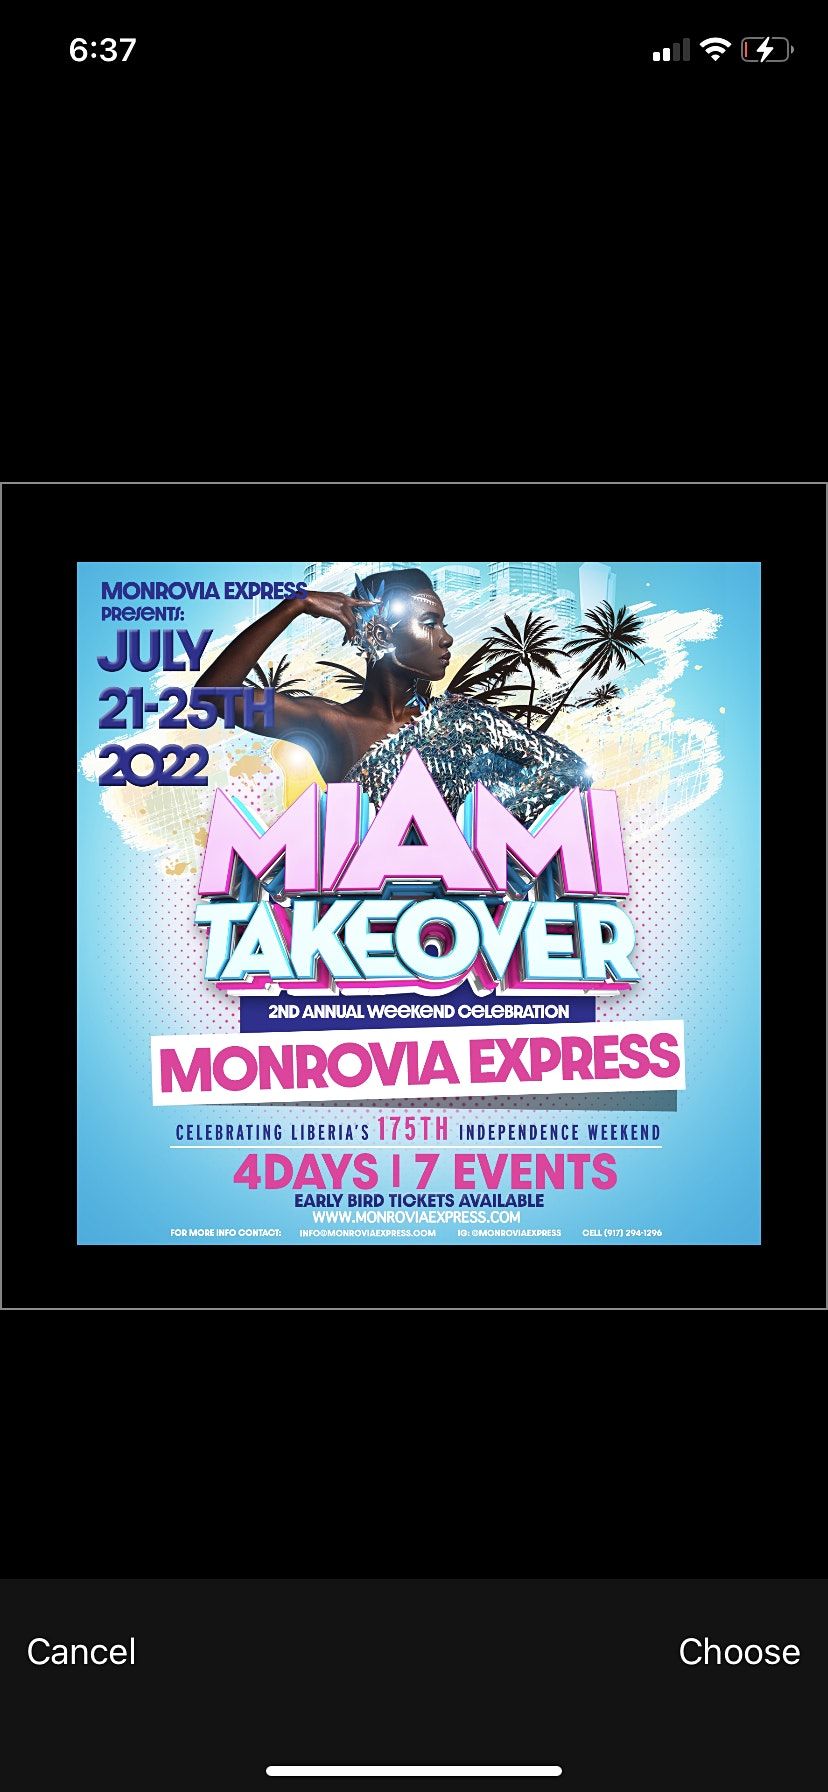 MONROVIA EXPRESS ( Liberia Independence Celebration) Miami Takeover